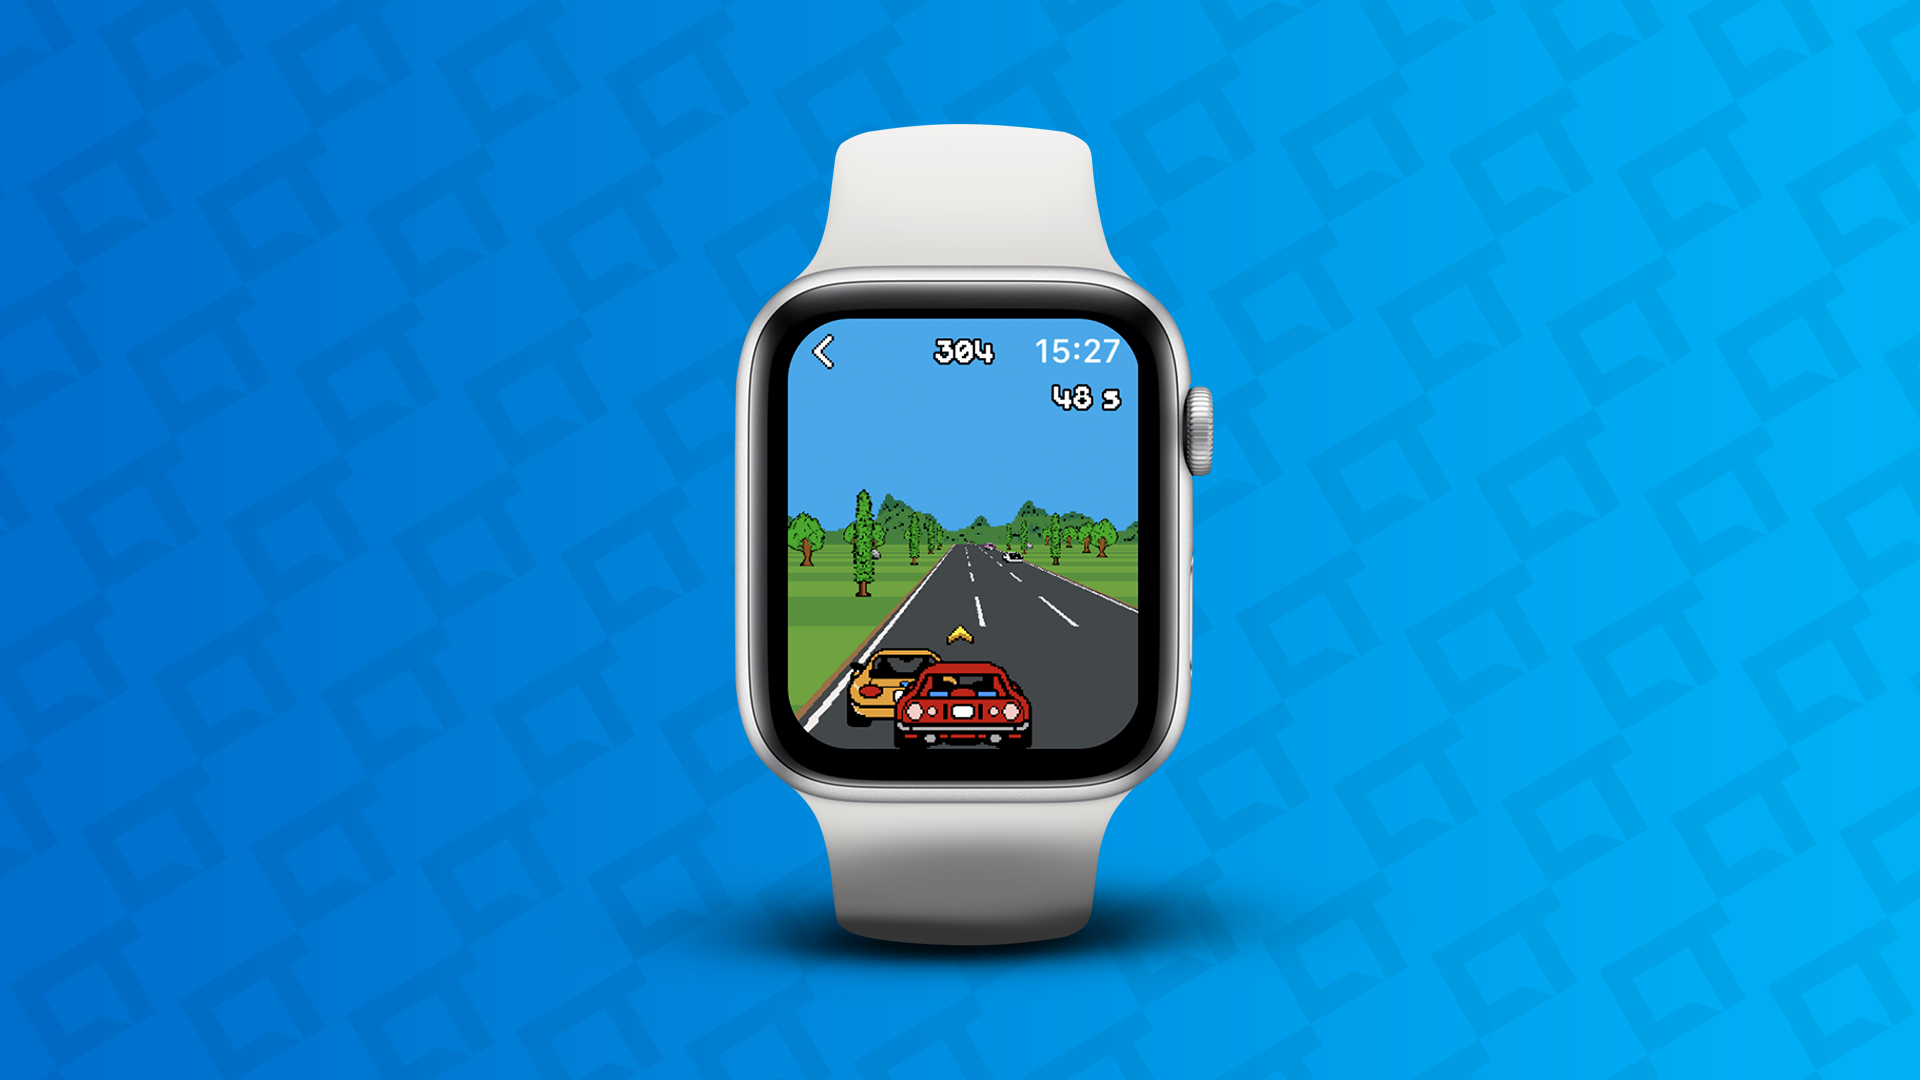 Conheça 8 jogos de carros grátis para Android e iOS